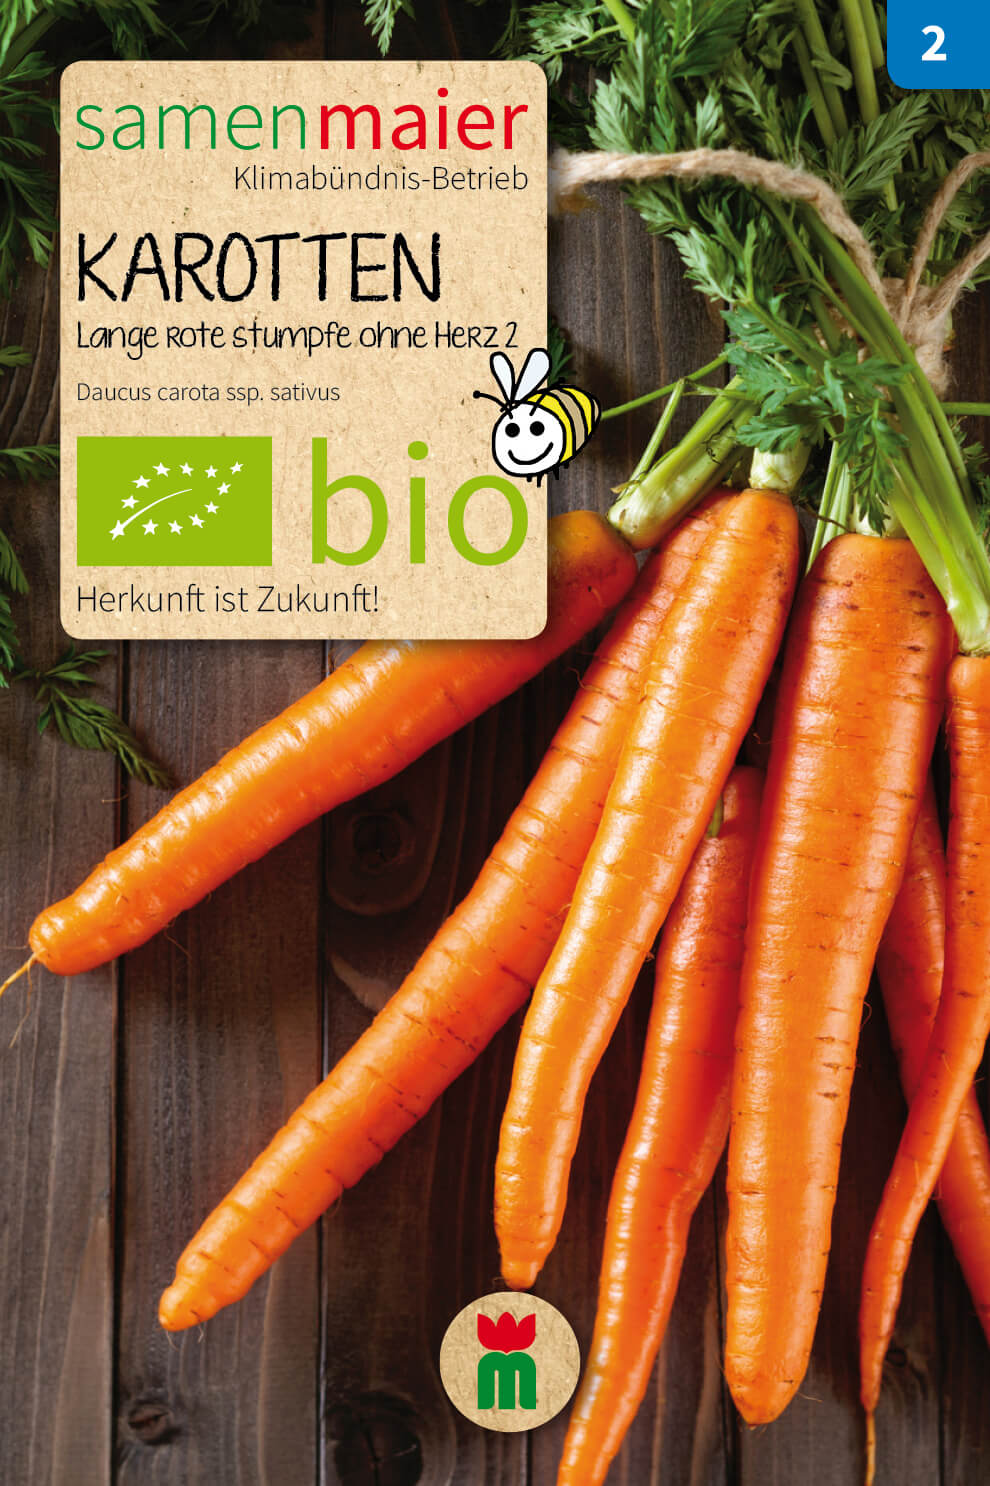 Beet-Box "Für den Babybrei" | BIO Gemüsesamen-Sets von Samen Maier